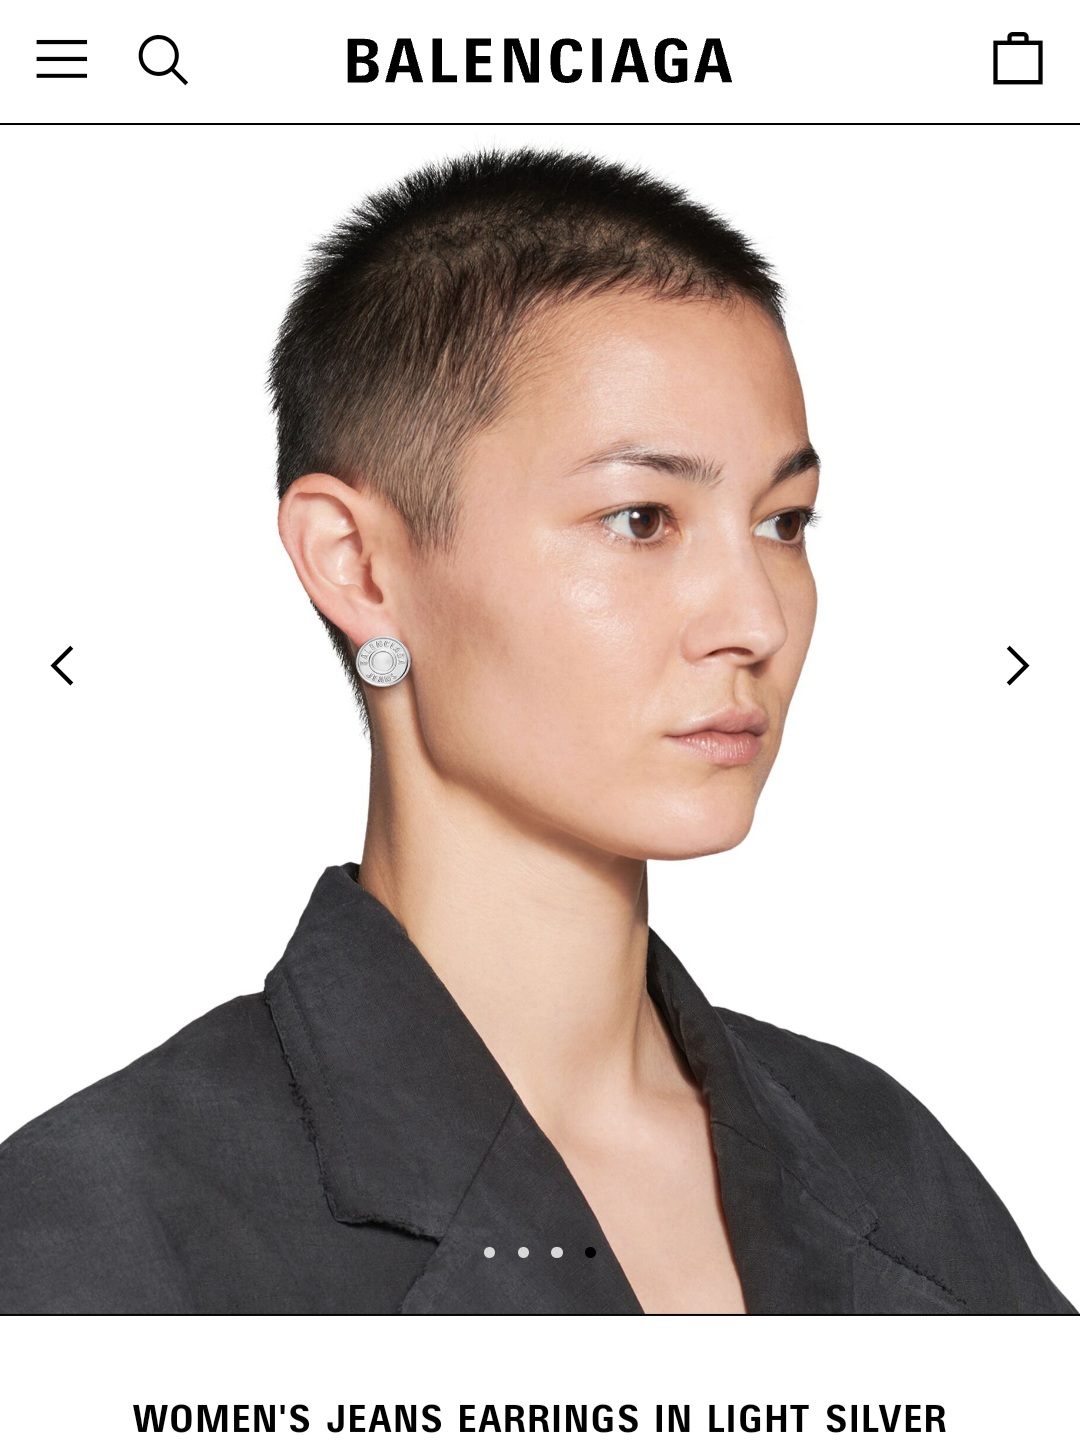 BALENCIAGA WOMEN’S JEANS earrings